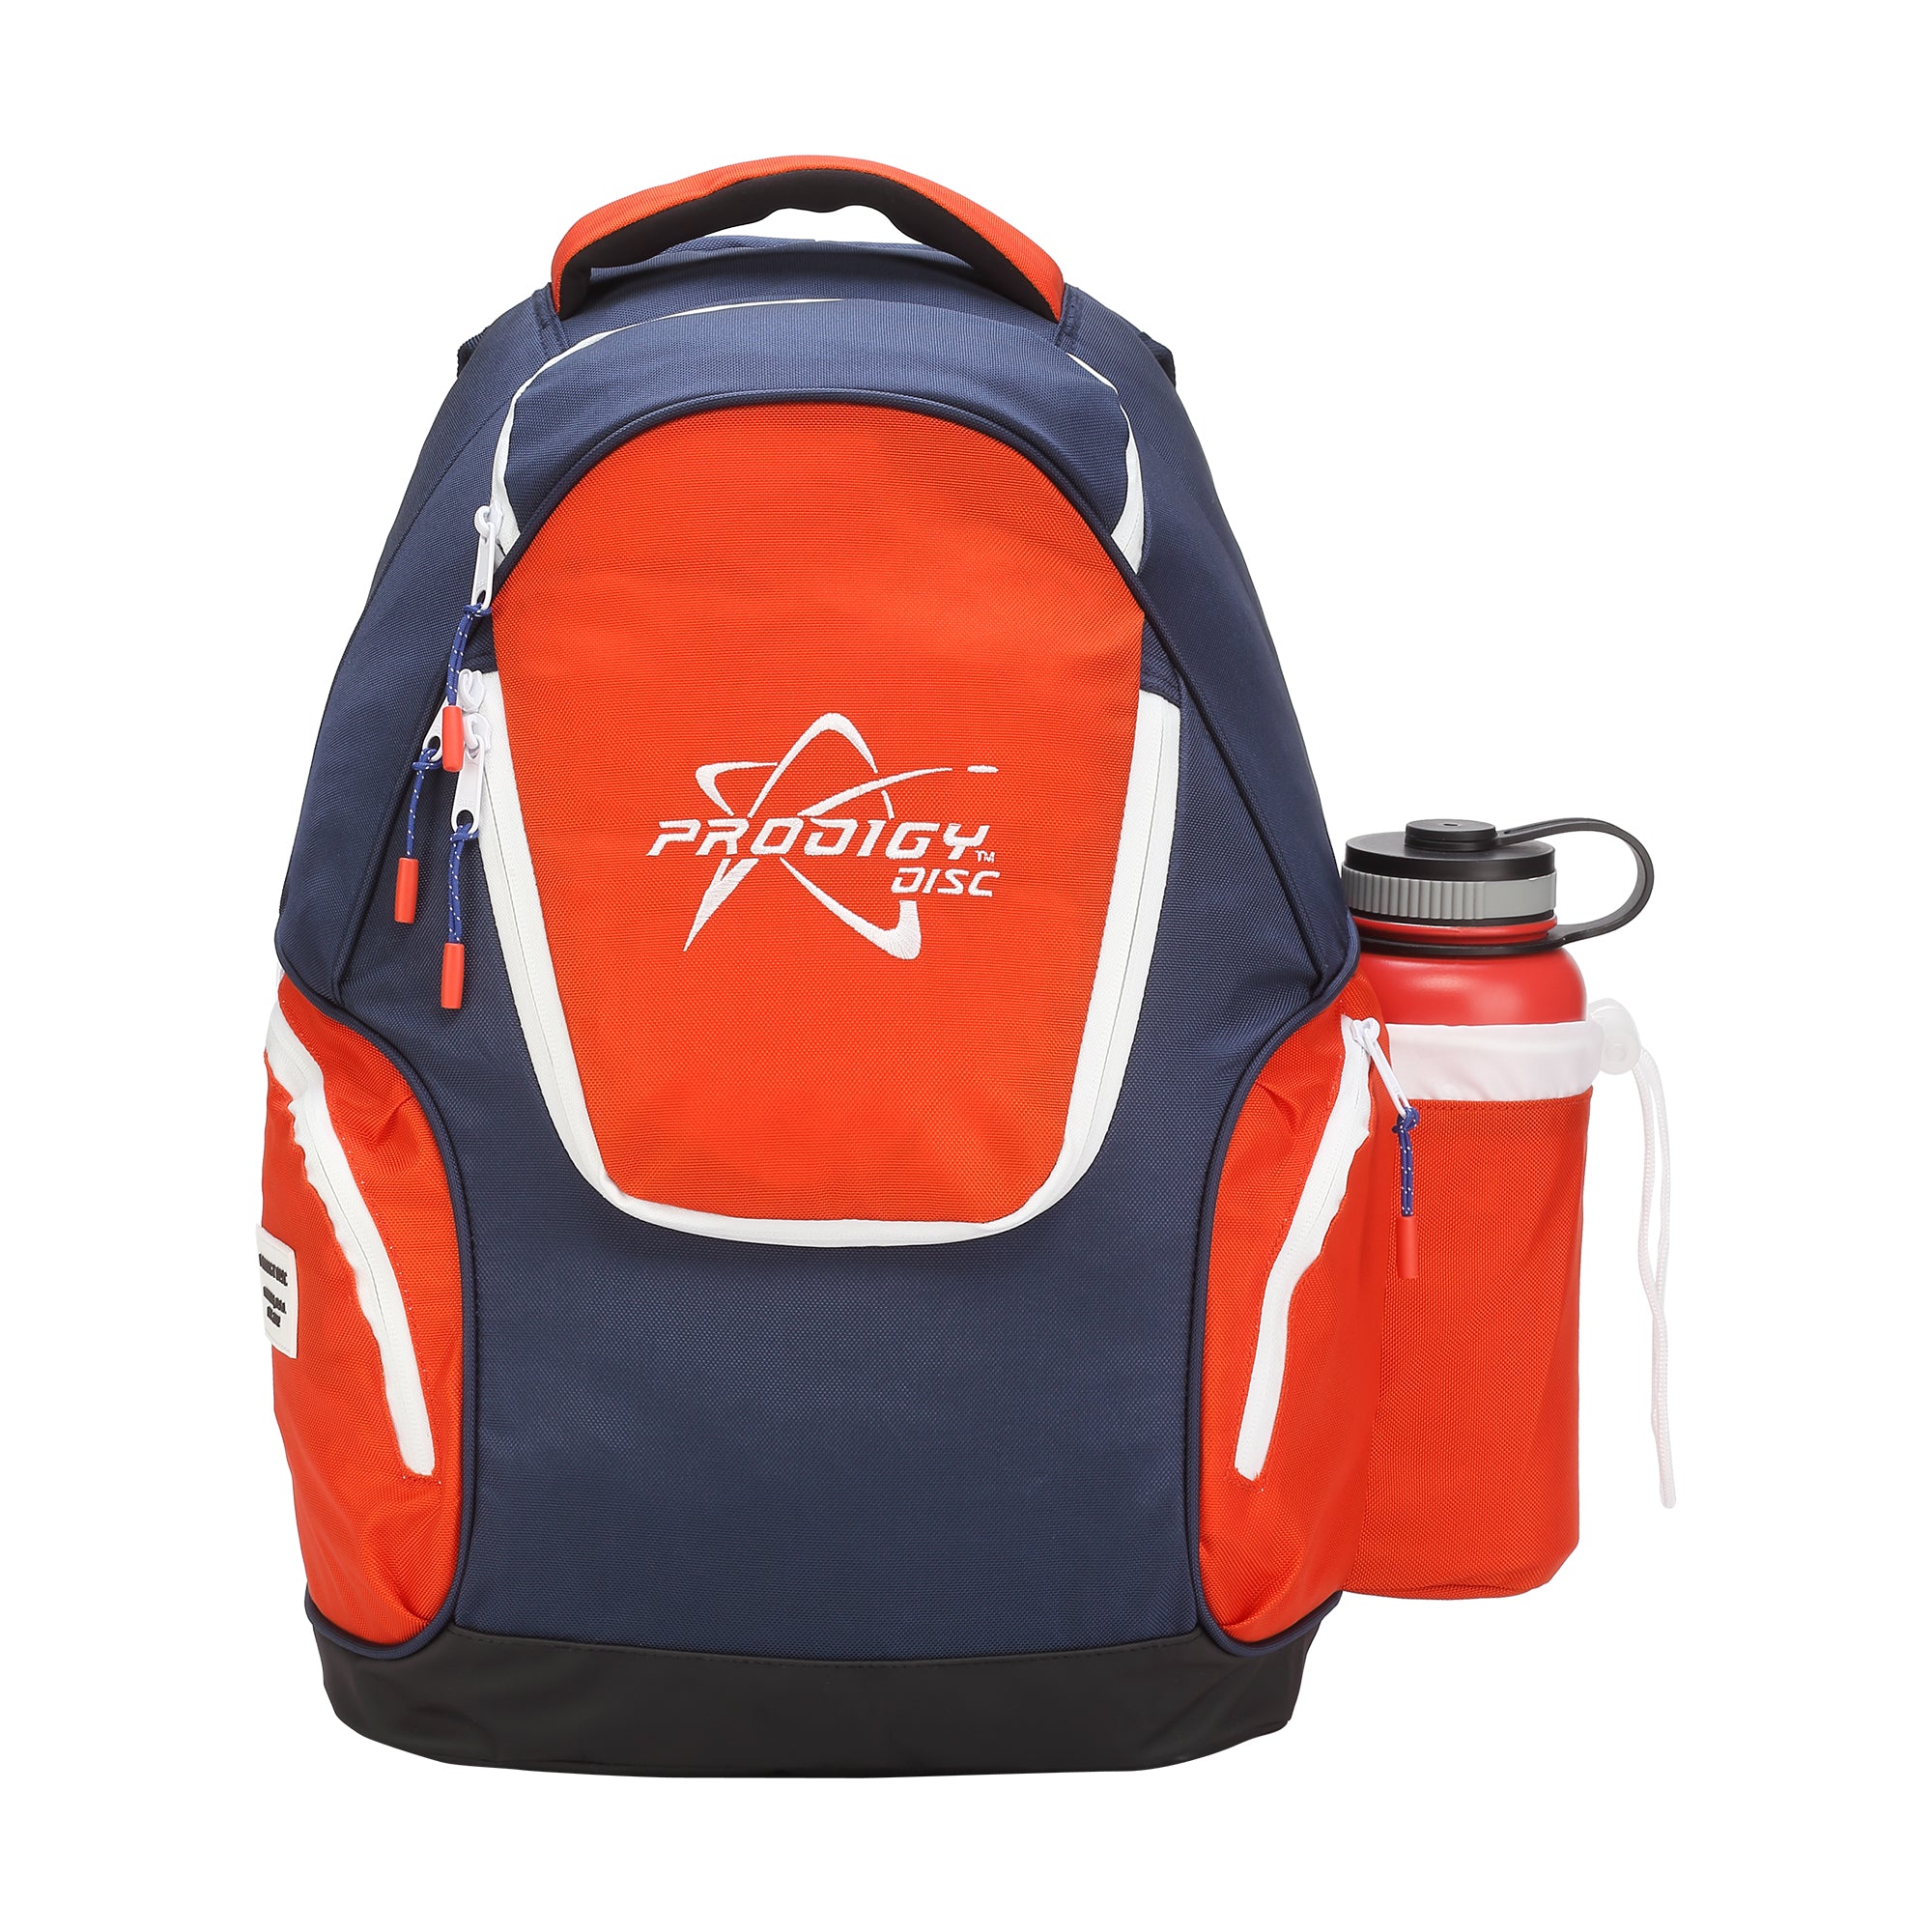 Prodigy BP-3 V2 Backpack Disc Golf Bag